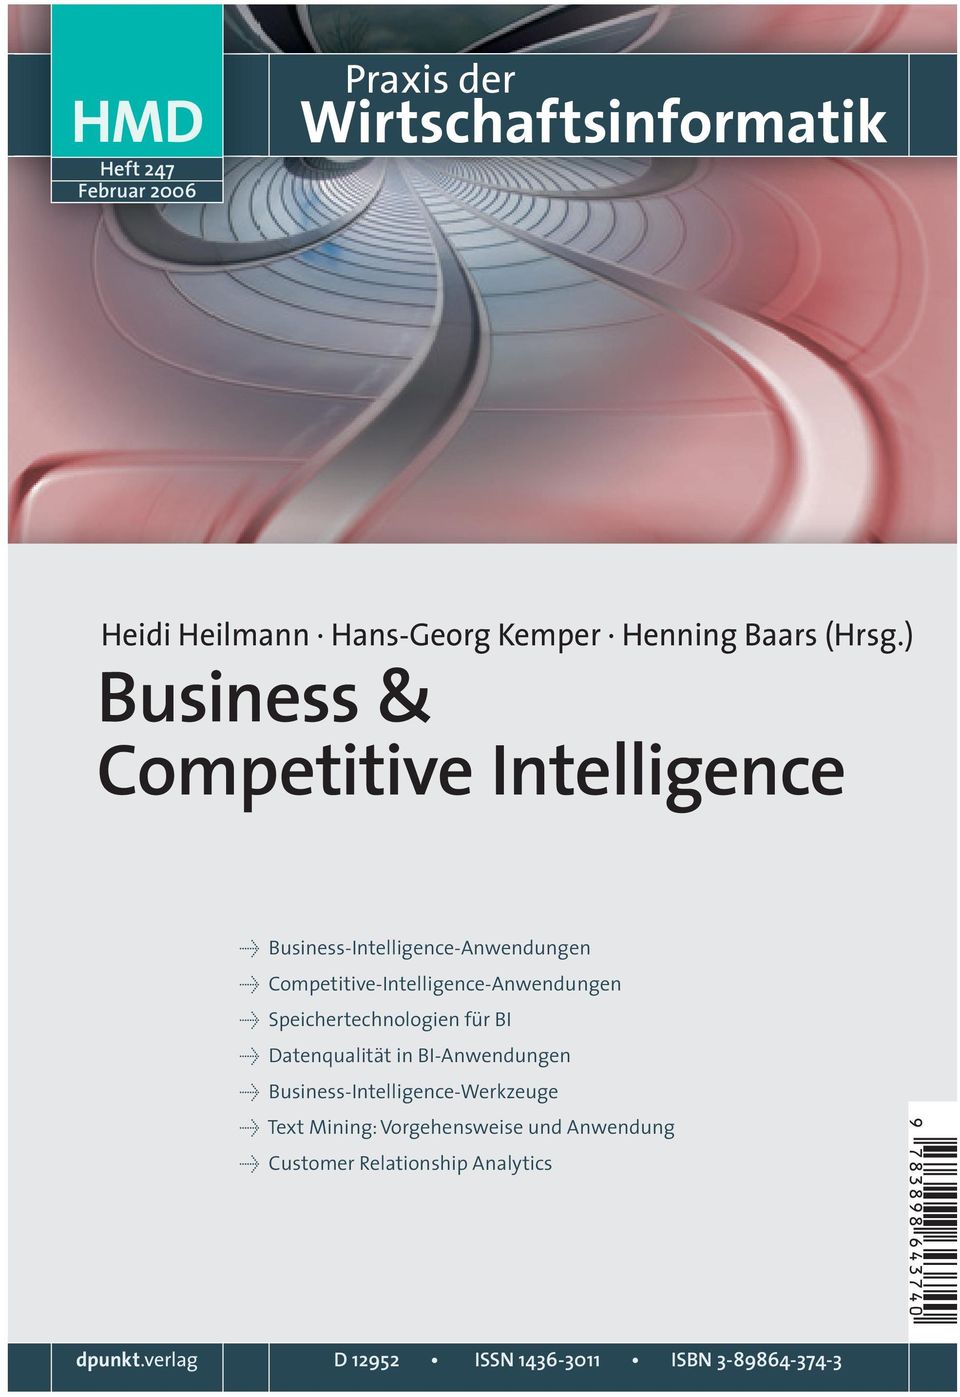 Û Speichertechnologien für BI Û Datenqualität in BI-Anwendungen Û Business-Intelligence-Werkzeuge Û Text Mining: